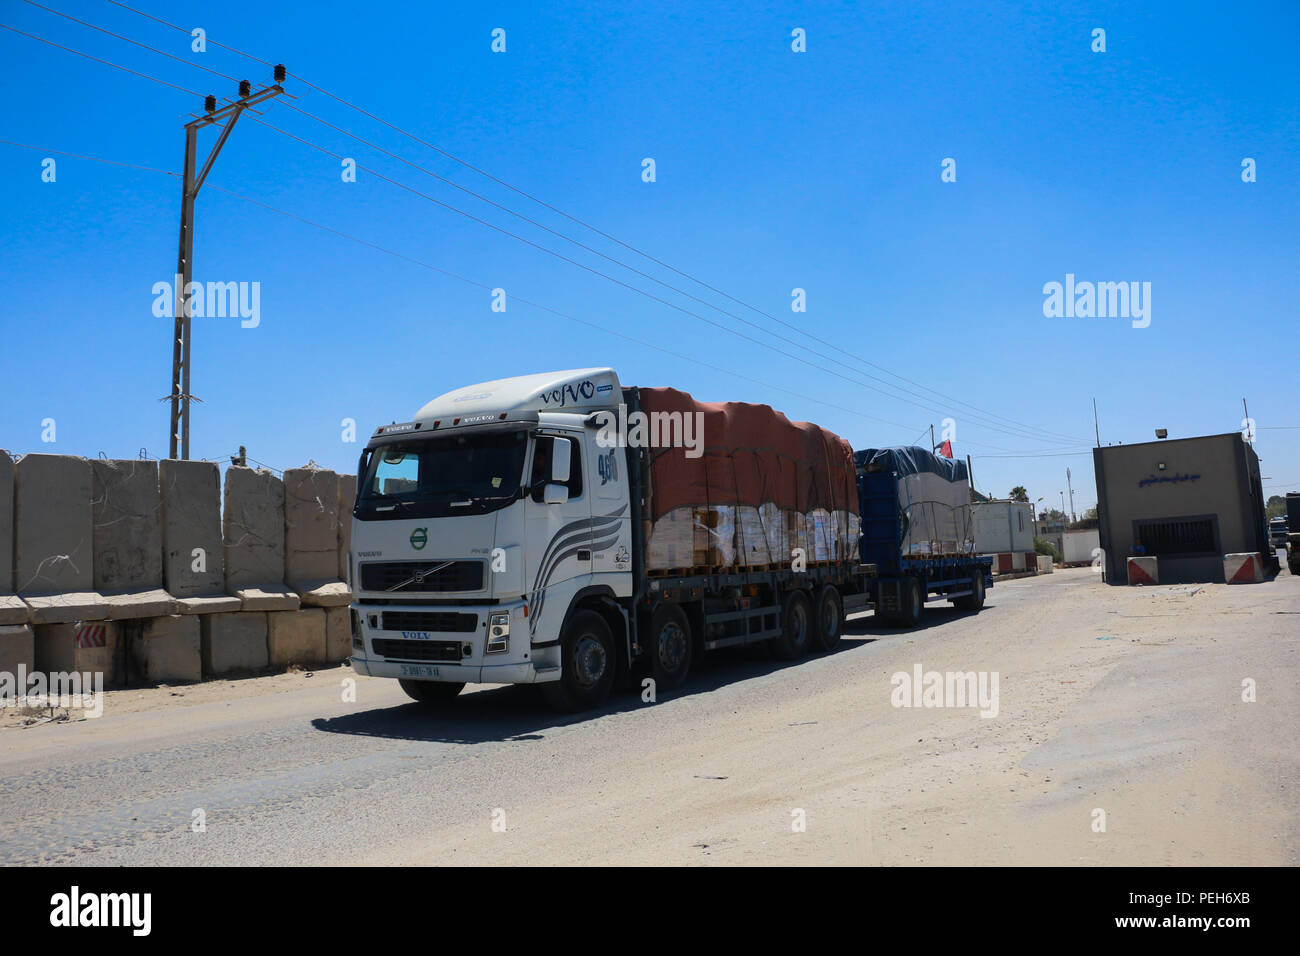 15 août 2018 - Les camions transportant des marchandises commerciales entrer dans Gaza par le terminal de Kerem Shalom à Rafah, dans le sud de la bande de Gaza, qu'Israël rouvre le passage de Kerem Salam après près d'un mois de fermeture. Israël a fermé le passage à niveau et a suspendu l'importation de carburant et de gaz sur les assiégés de Gaza comme mesures de répression contre le lancement par les Palestiniens des ballons incendiaires et des cerfs-volants de la bande dans le sud d'Israël. Des deux passage vers Gaza contrôlée par Israël, le passage d'Erez dans le nord de la bande de Gaza est spécifiquement pour les piétons, tandis que le terminal de Kerem Shalom je Banque D'Images